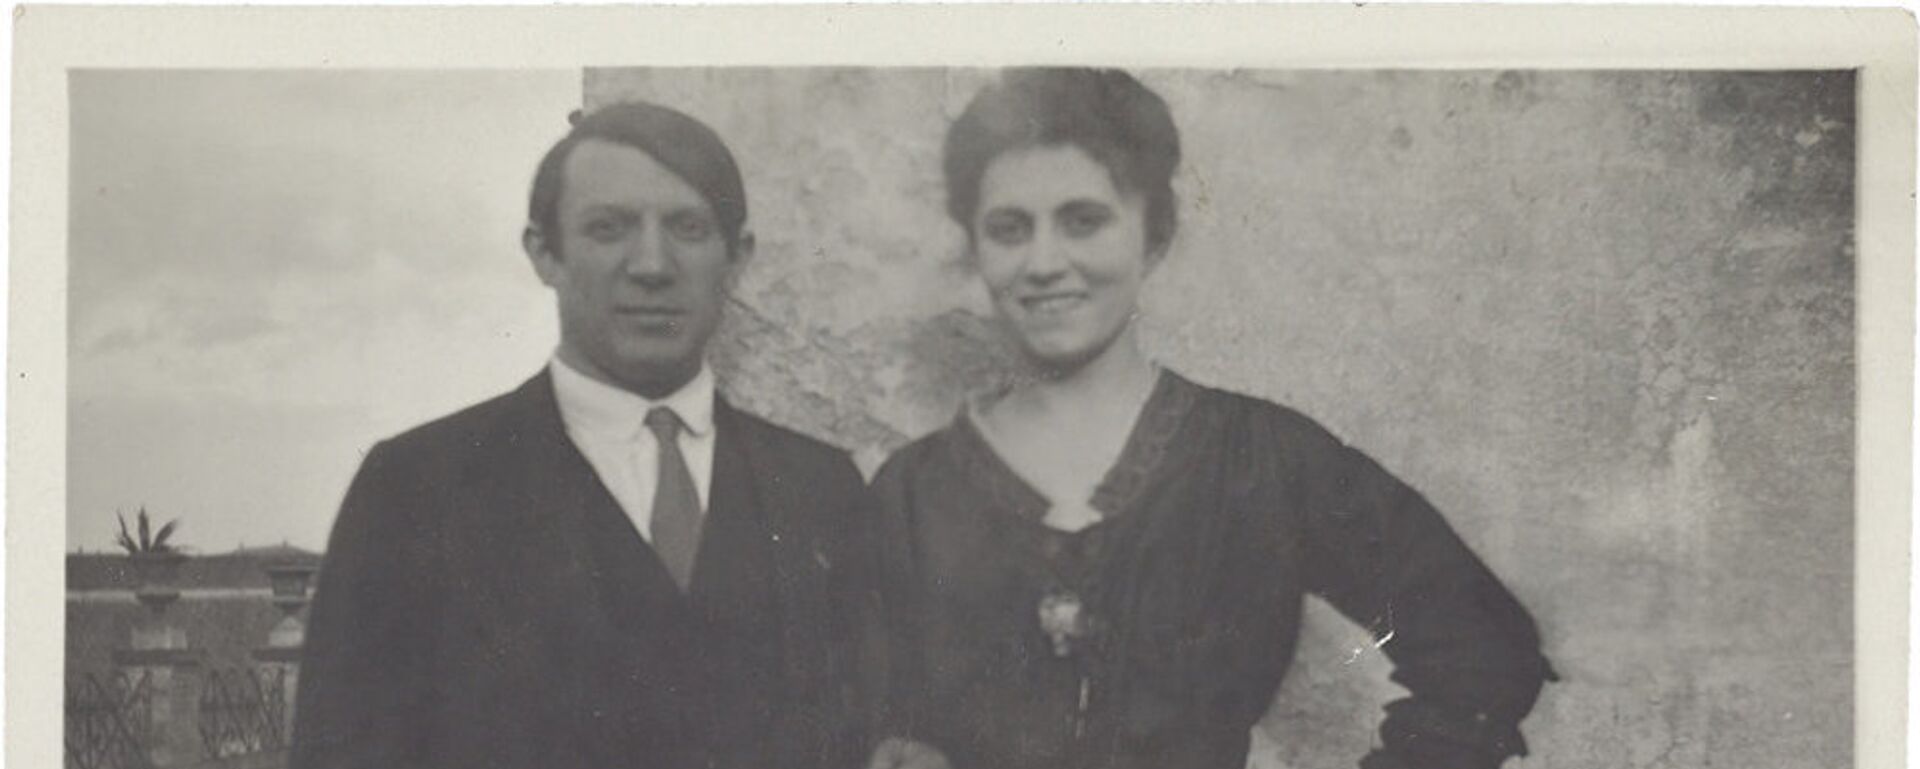 Пабло Пикасо и Олга Хохлова - Sputnik Србија, 1920, 27.11.2018